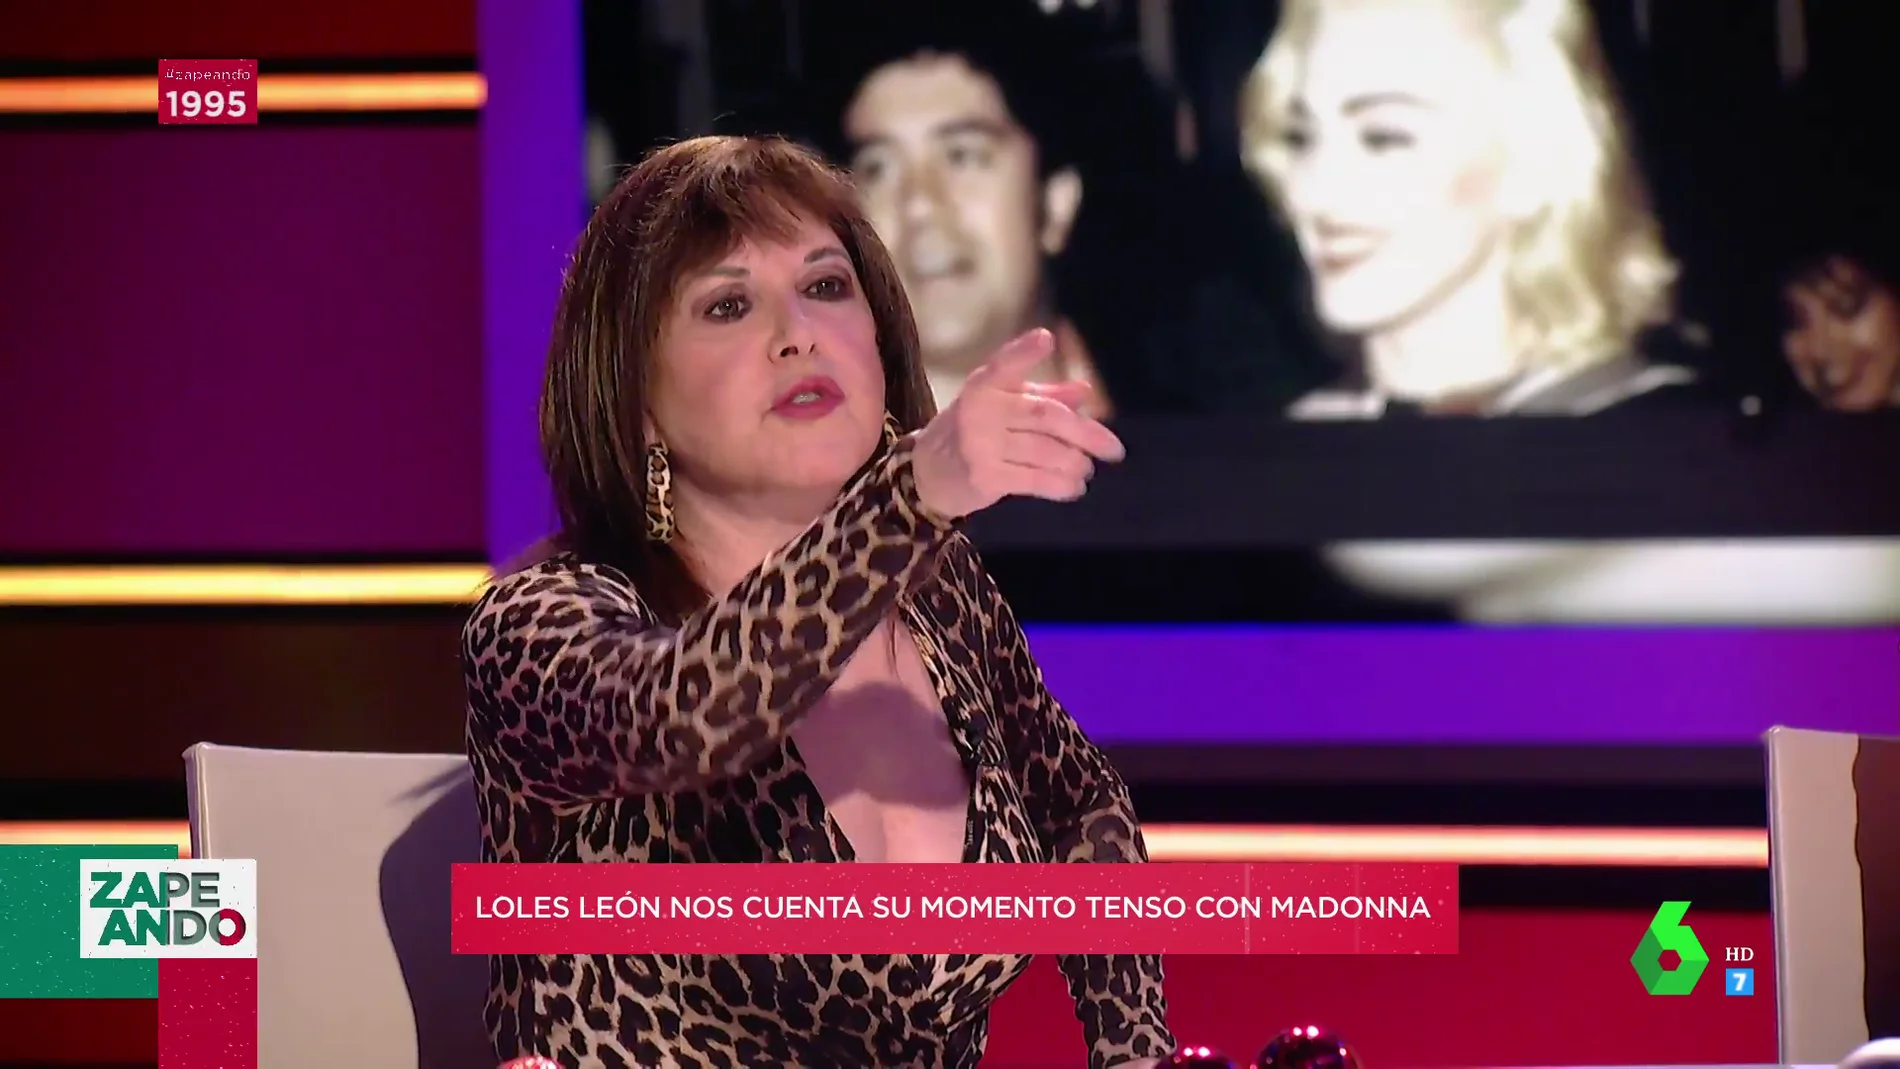 Loles León detalla su "movida" con Madonna en su primer encuentro: "Le dije 'no cariño, look at me o te corto el cuello'"